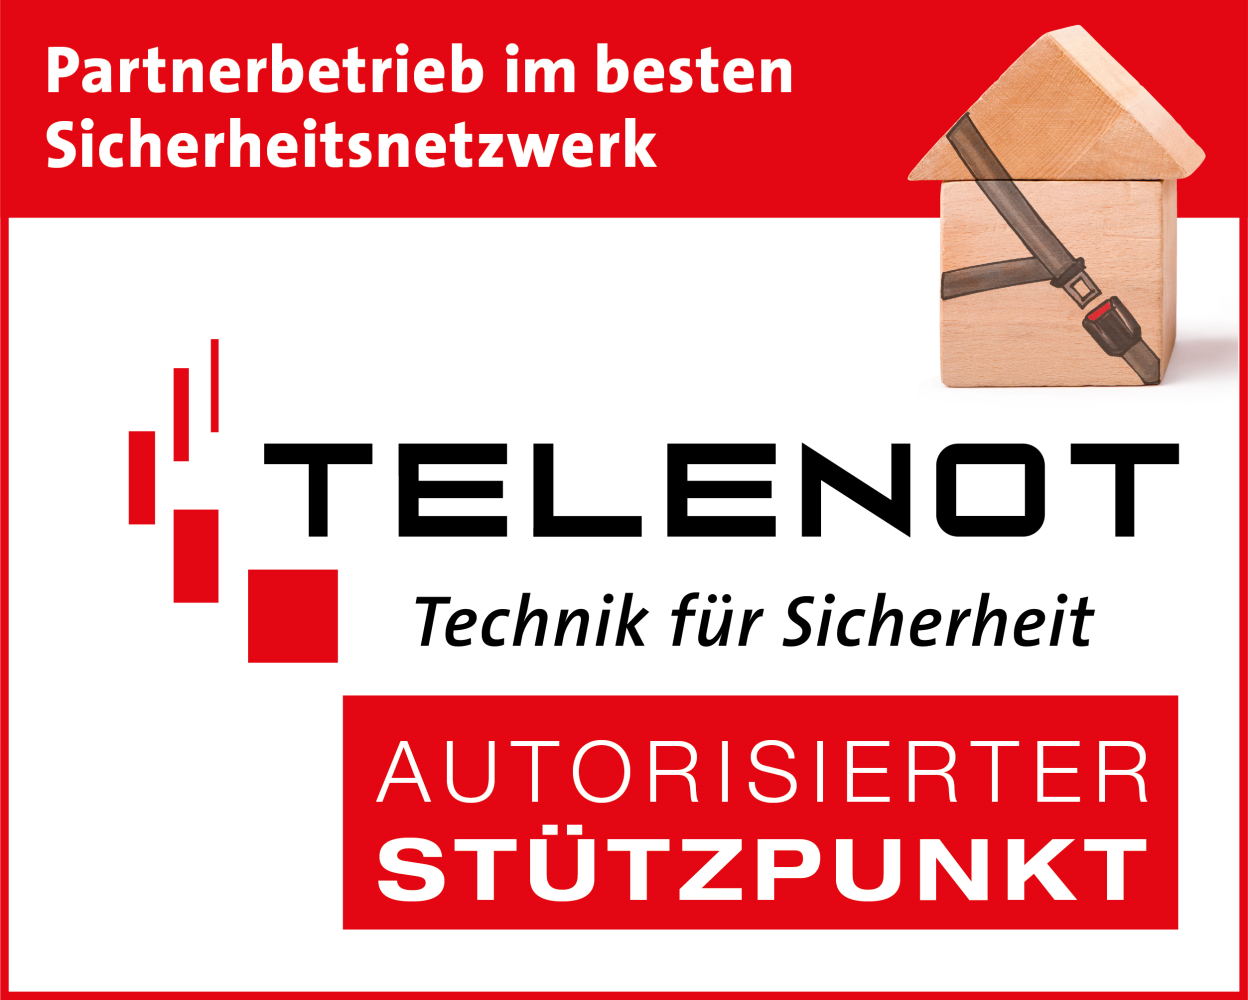 Telenot Autorisierter Stützpunkt